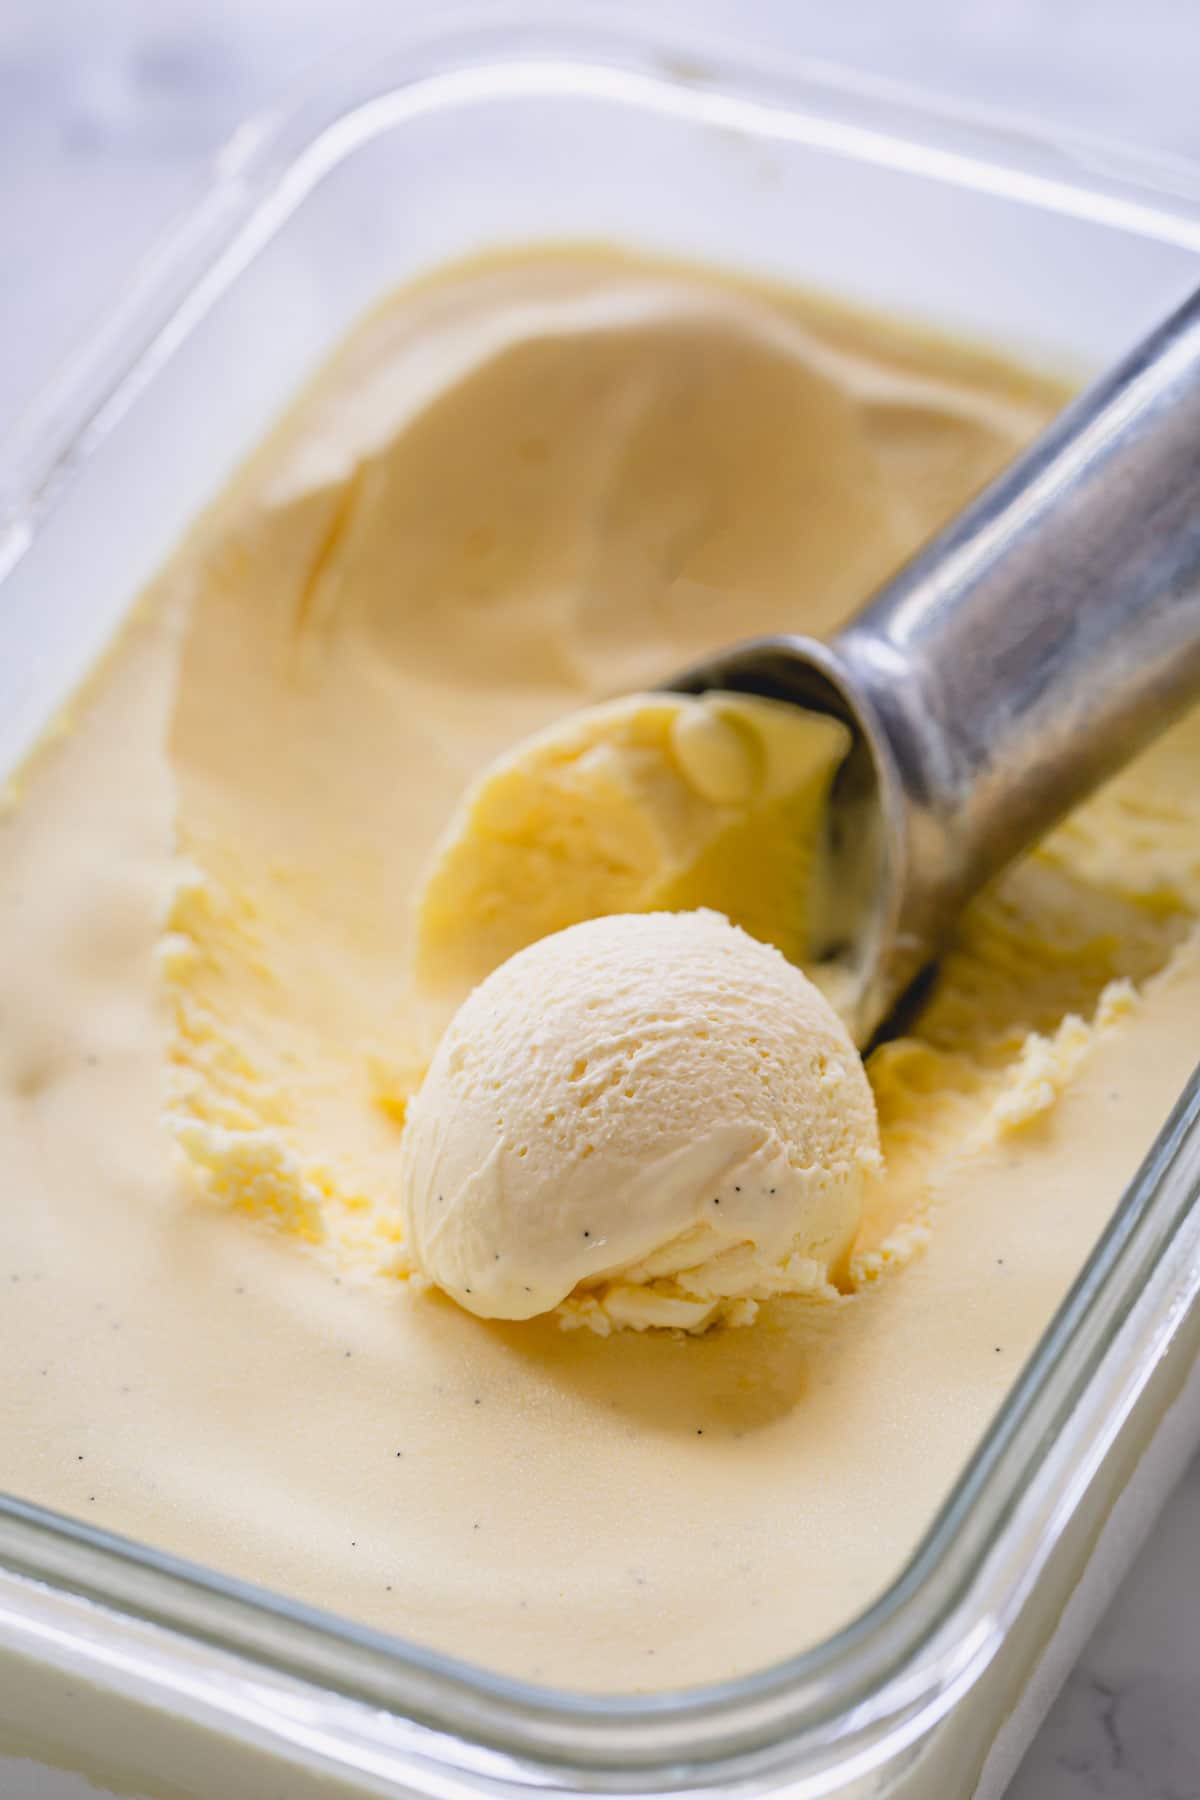 https://www.sweetandsavorybyshinee.com/wp-content/uploads/2021/07/Homemade-Vanilla-Ice-Cream-4.jpg